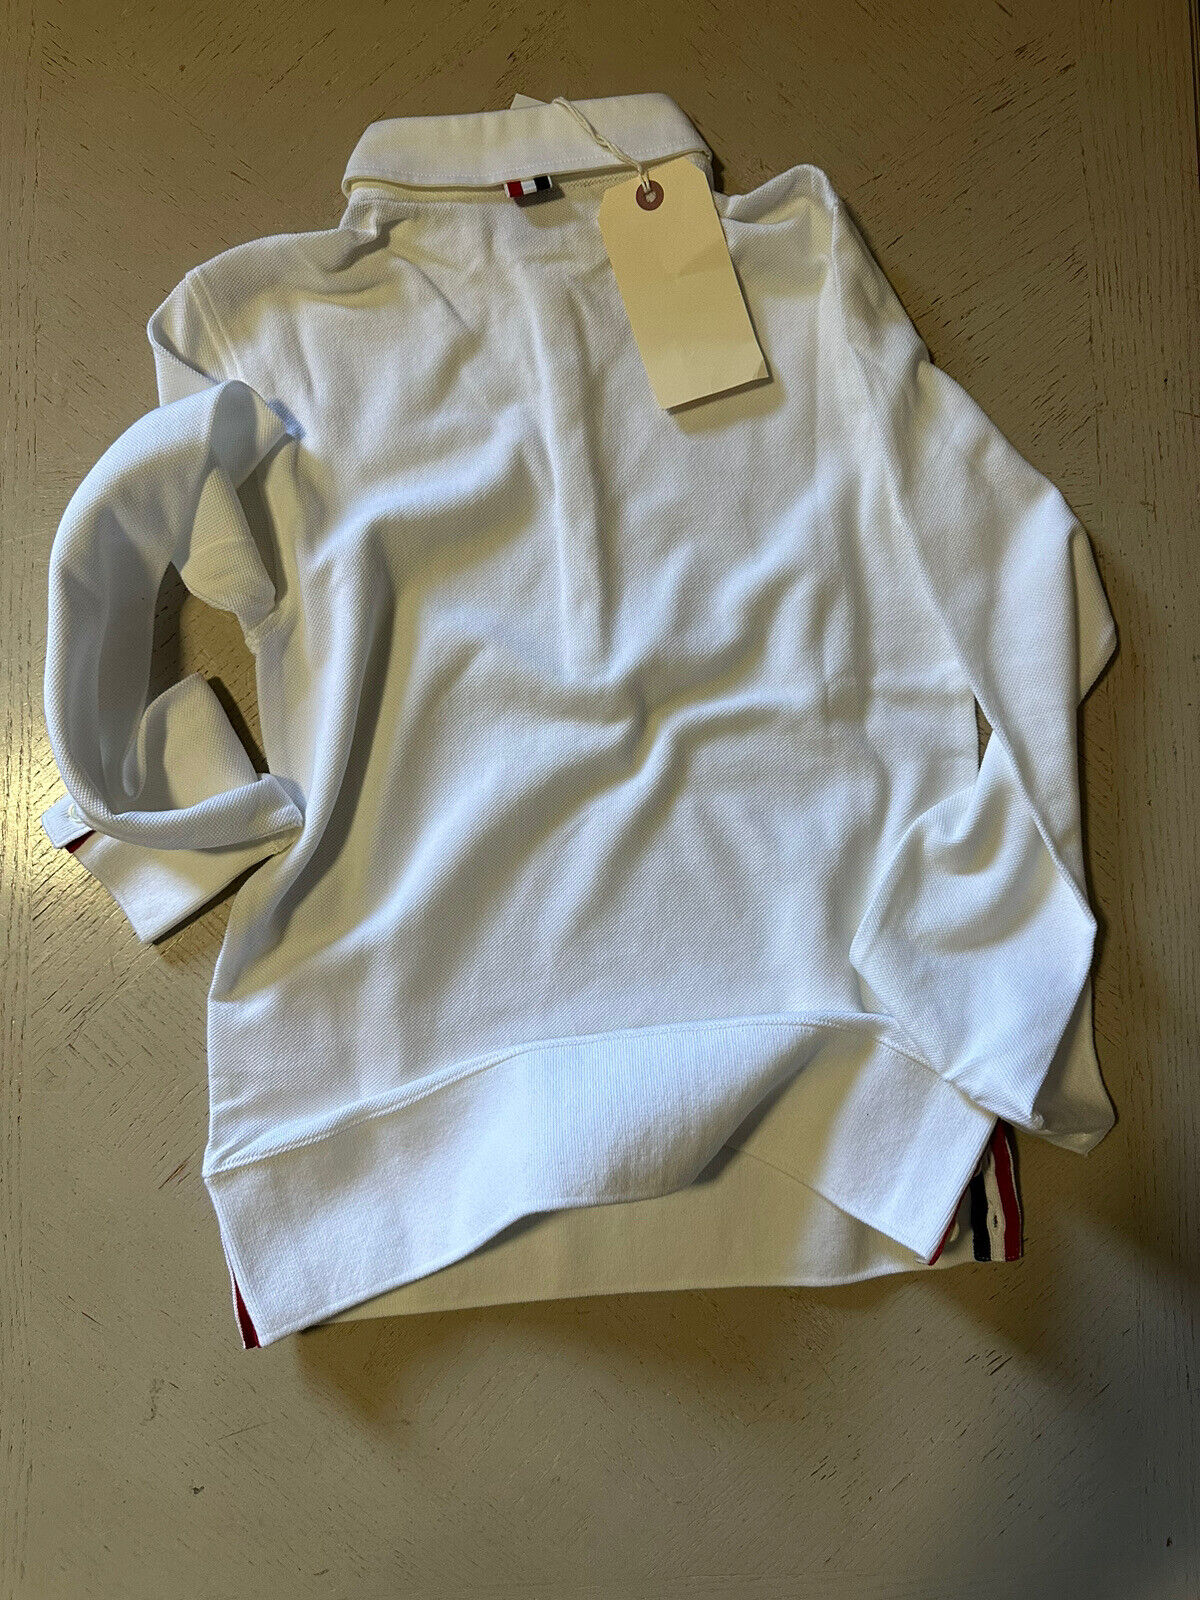 NWT Thom Browne Мужская однотонная приталенная рубашка-поло с длинными рукавами, белая, размер 1 (S)